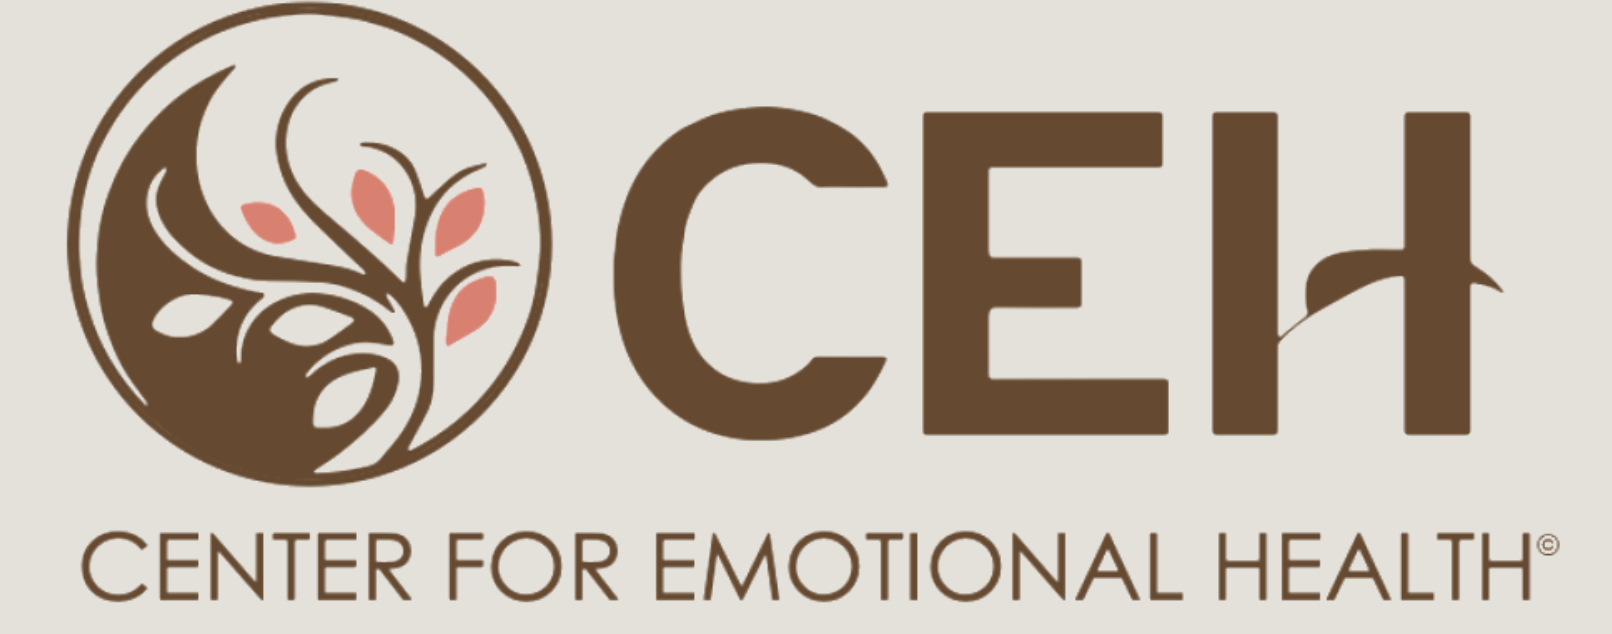 Center for Emotional Health logo